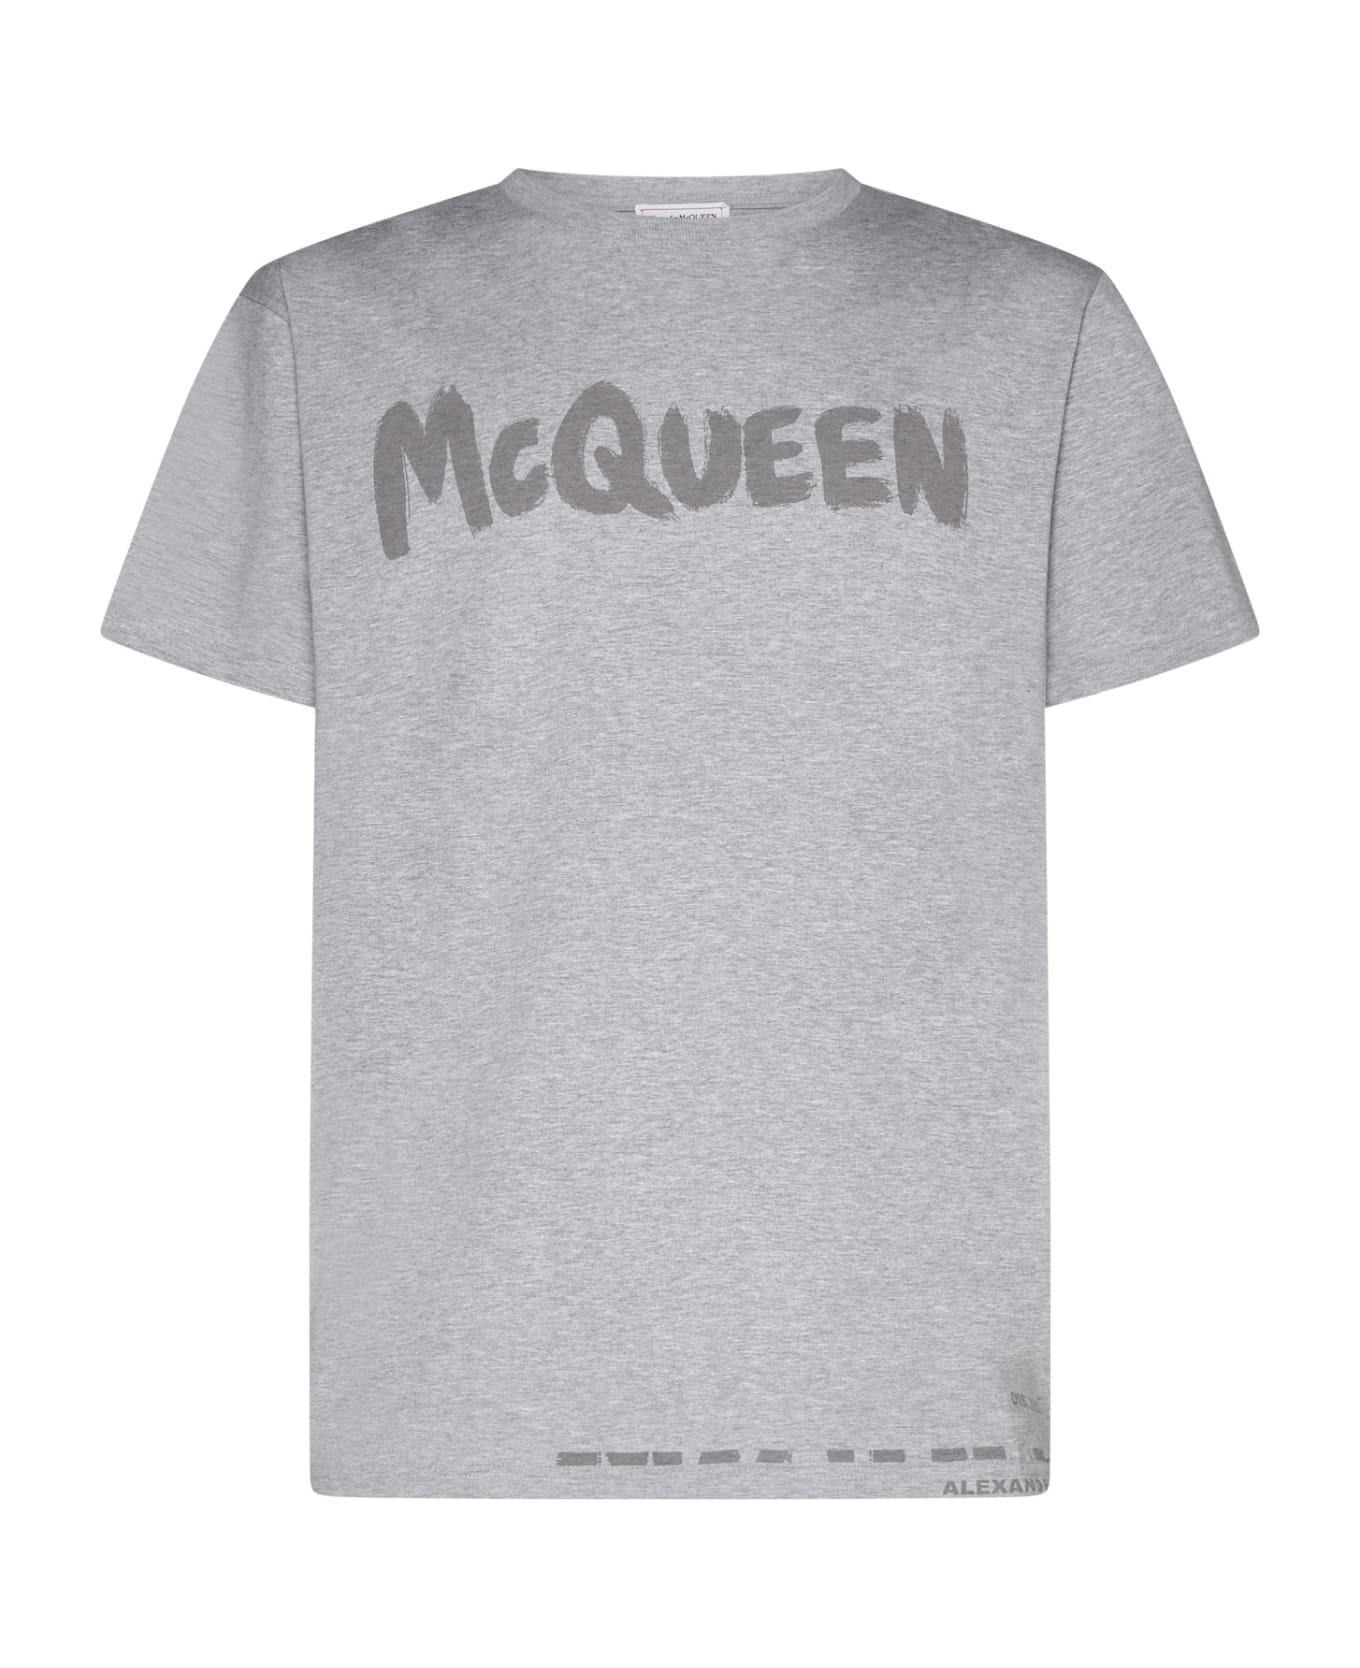 Alexander McQueen T-Shirt - Pale grey/tonal